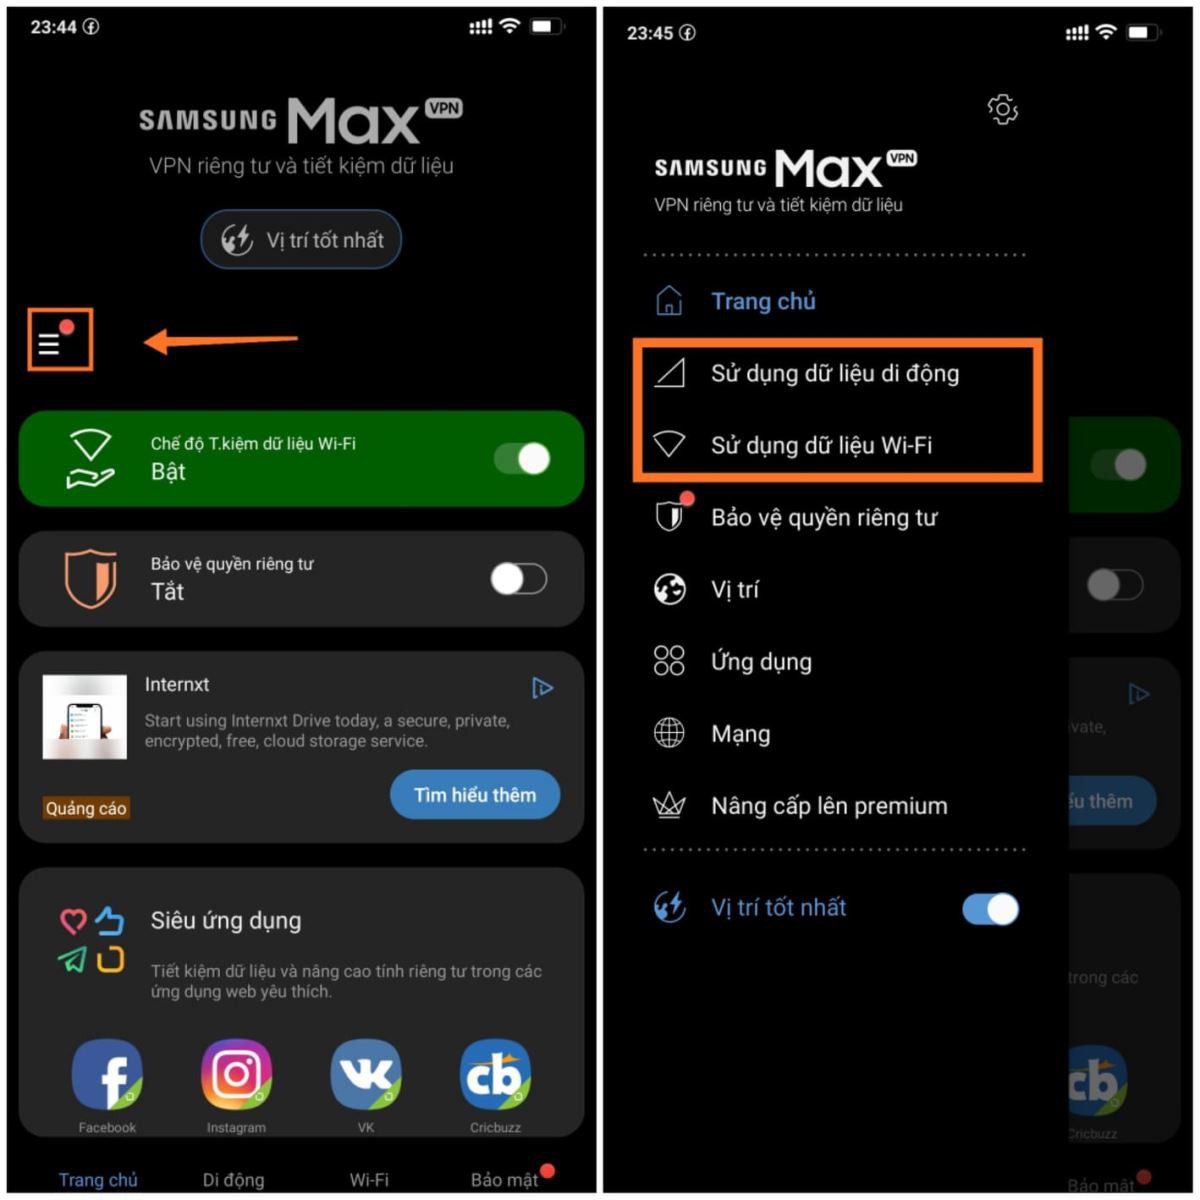 Samsung Max là gì? Cách sử dụng Samsung Max hiệu quả